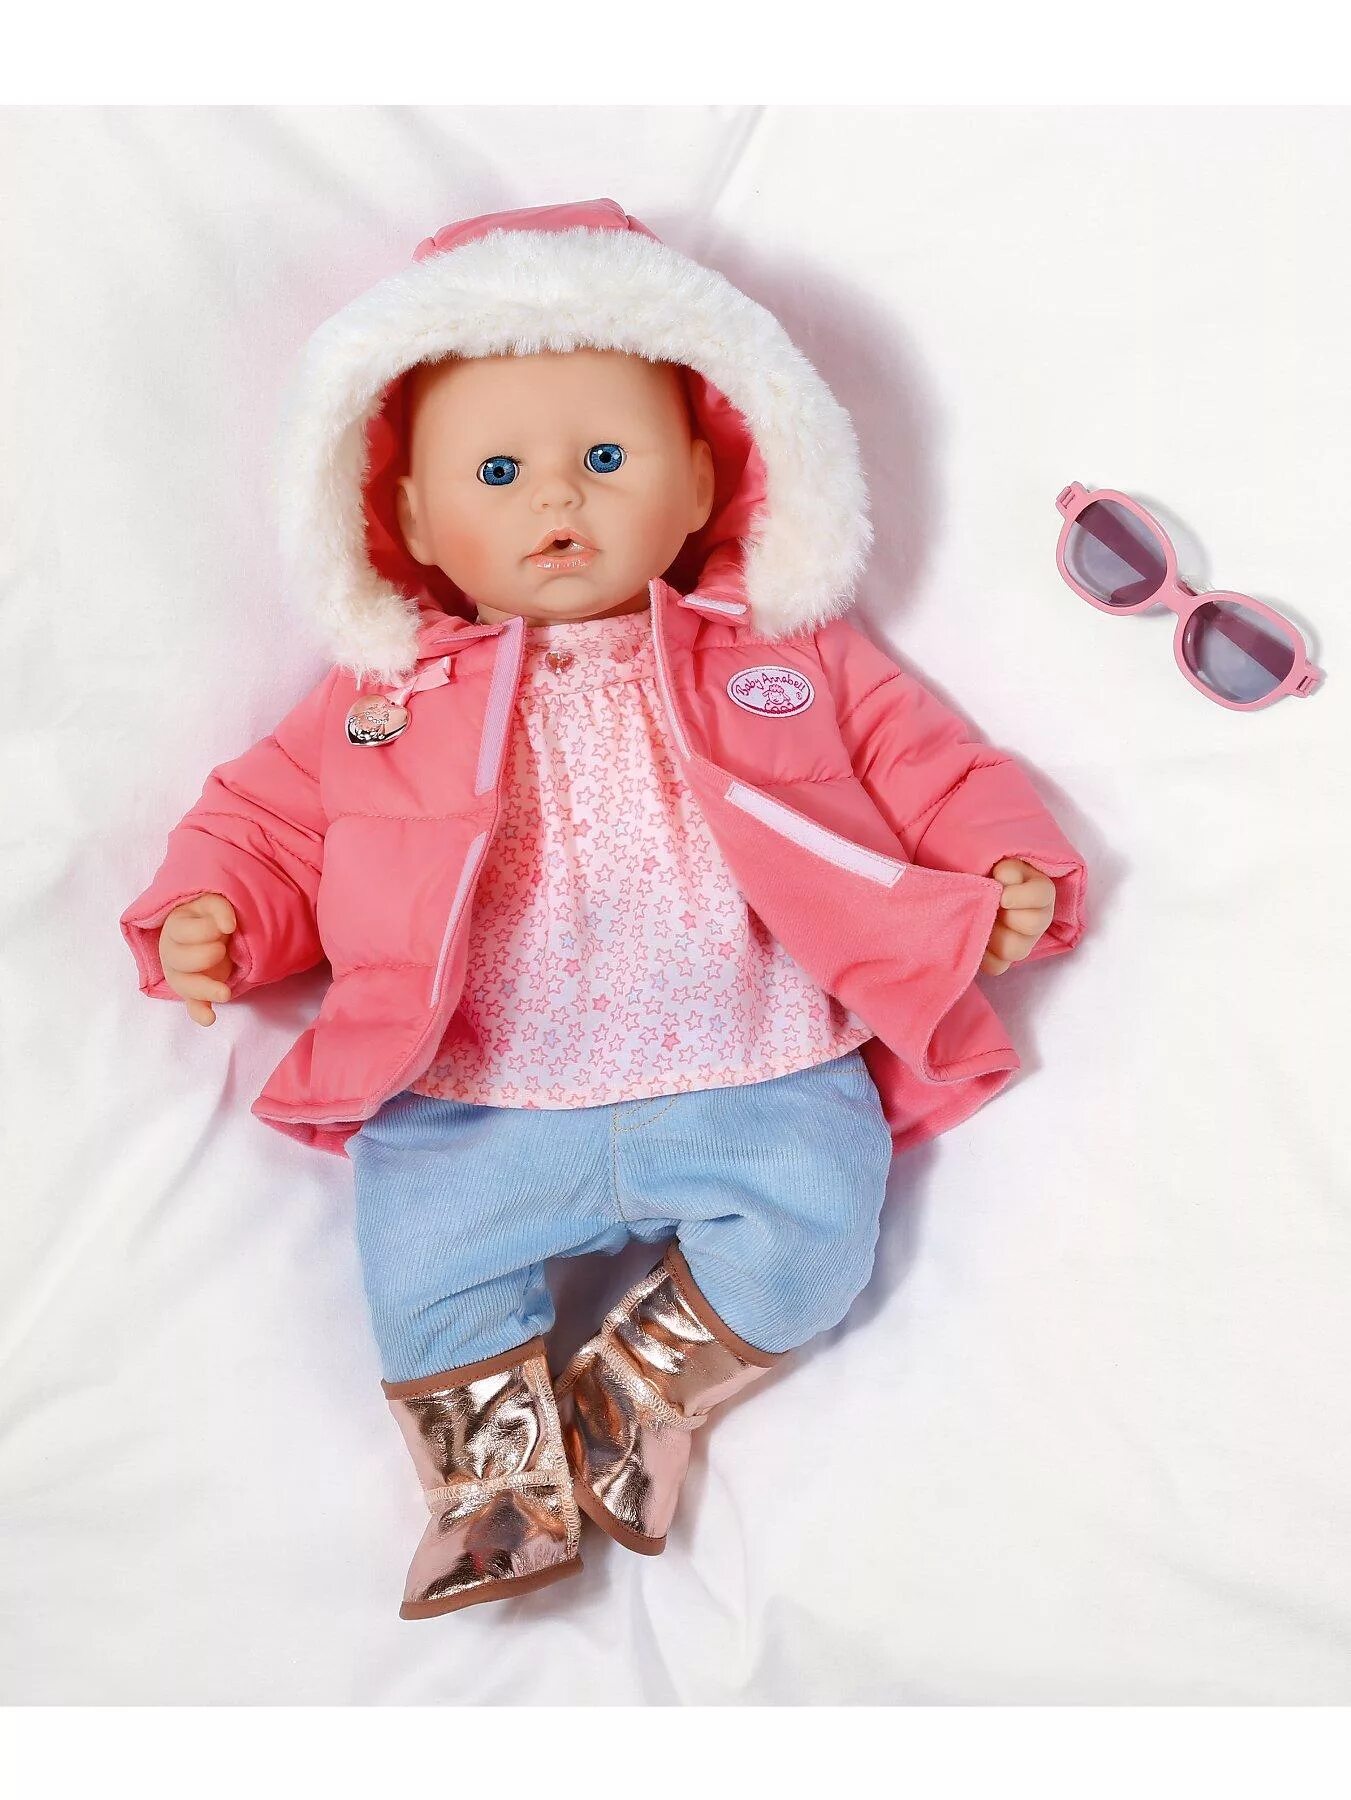 Зимняя одежда Беби Аннабель. Беби Борн Запф Криэйшн. Одежда для Беби Анабель. Baby Annabell одежда для кукол. Кукла пупс одежда для кукол